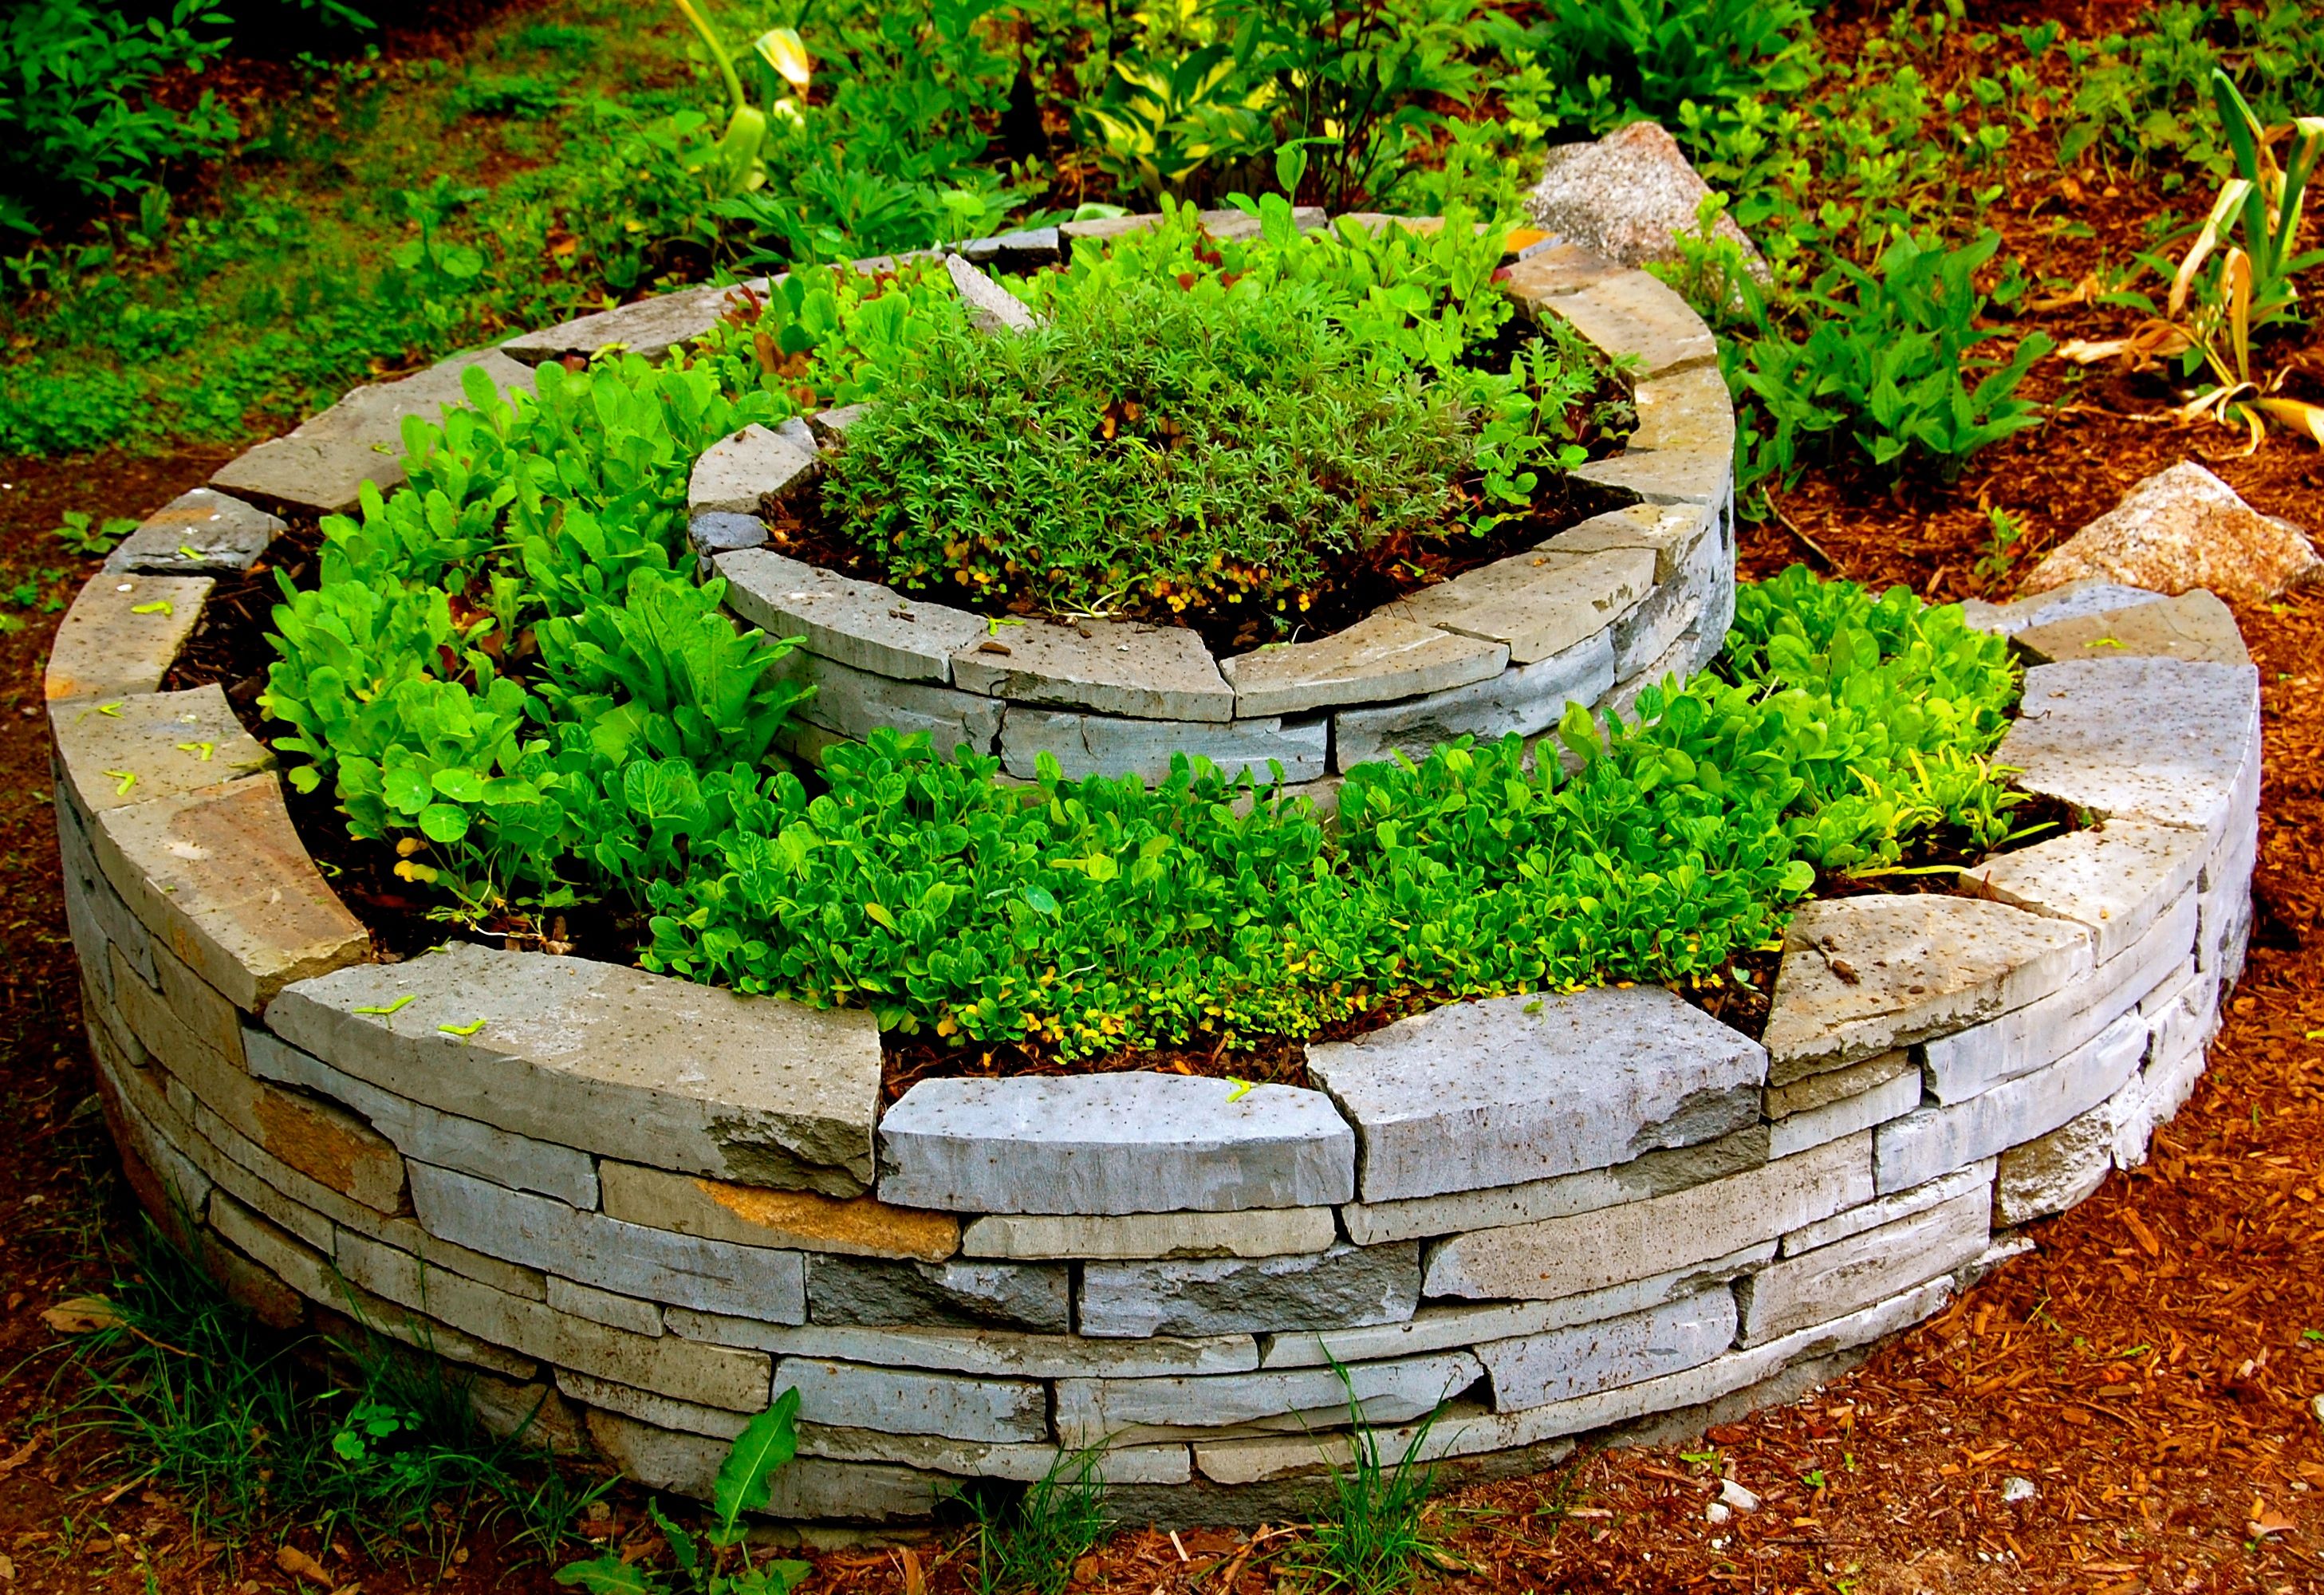 Stone herb spiral sculpture www.homeharvest.biz | HomeHarvest ...